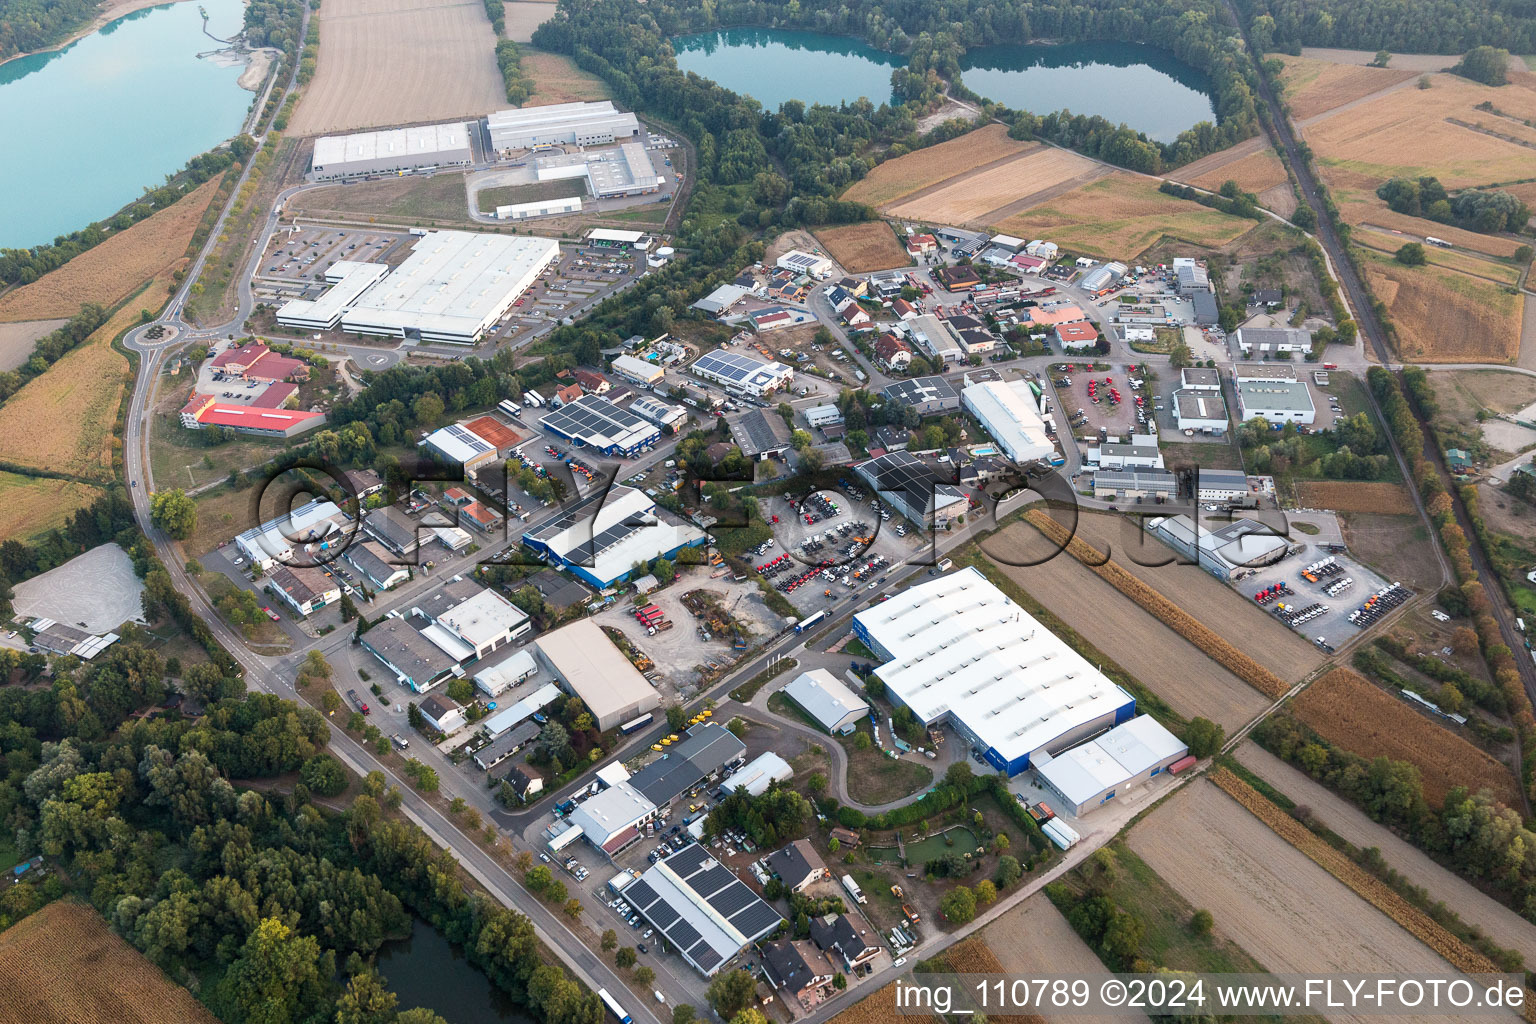 Vue aérienne de Installations techniques dans la zone industrielle à Hagenbach dans le département Rhénanie-Palatinat, Allemagne